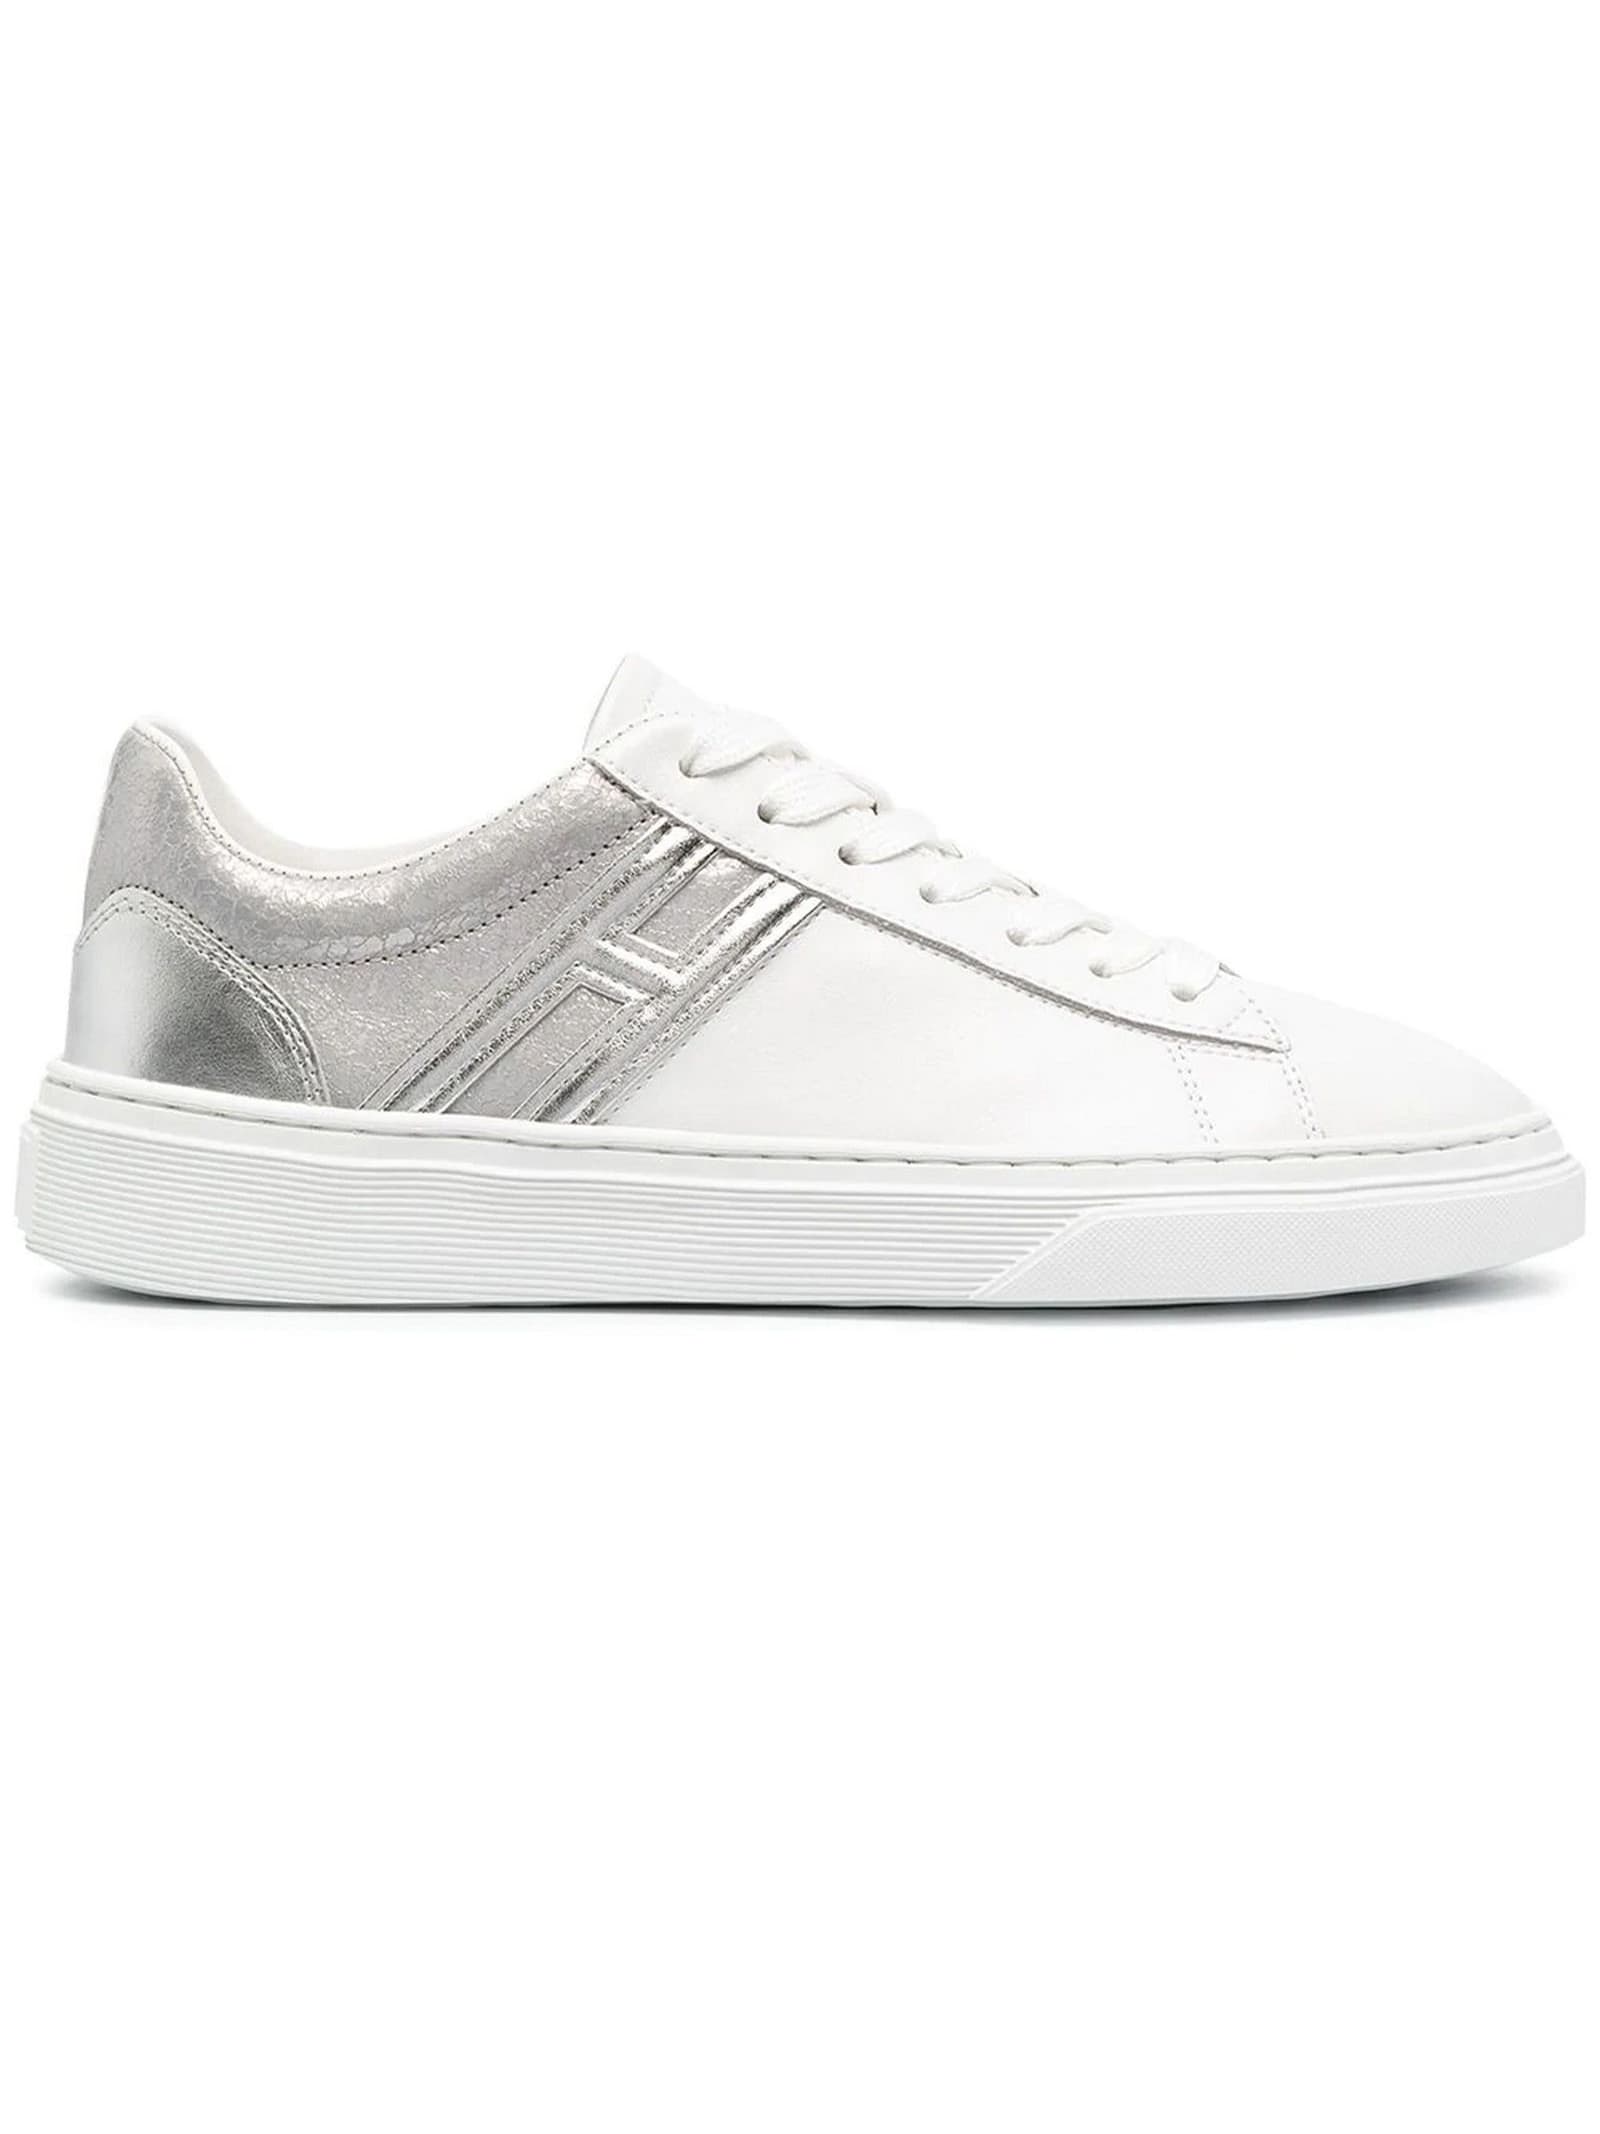 Hogan Sneakers H365 Silver, White